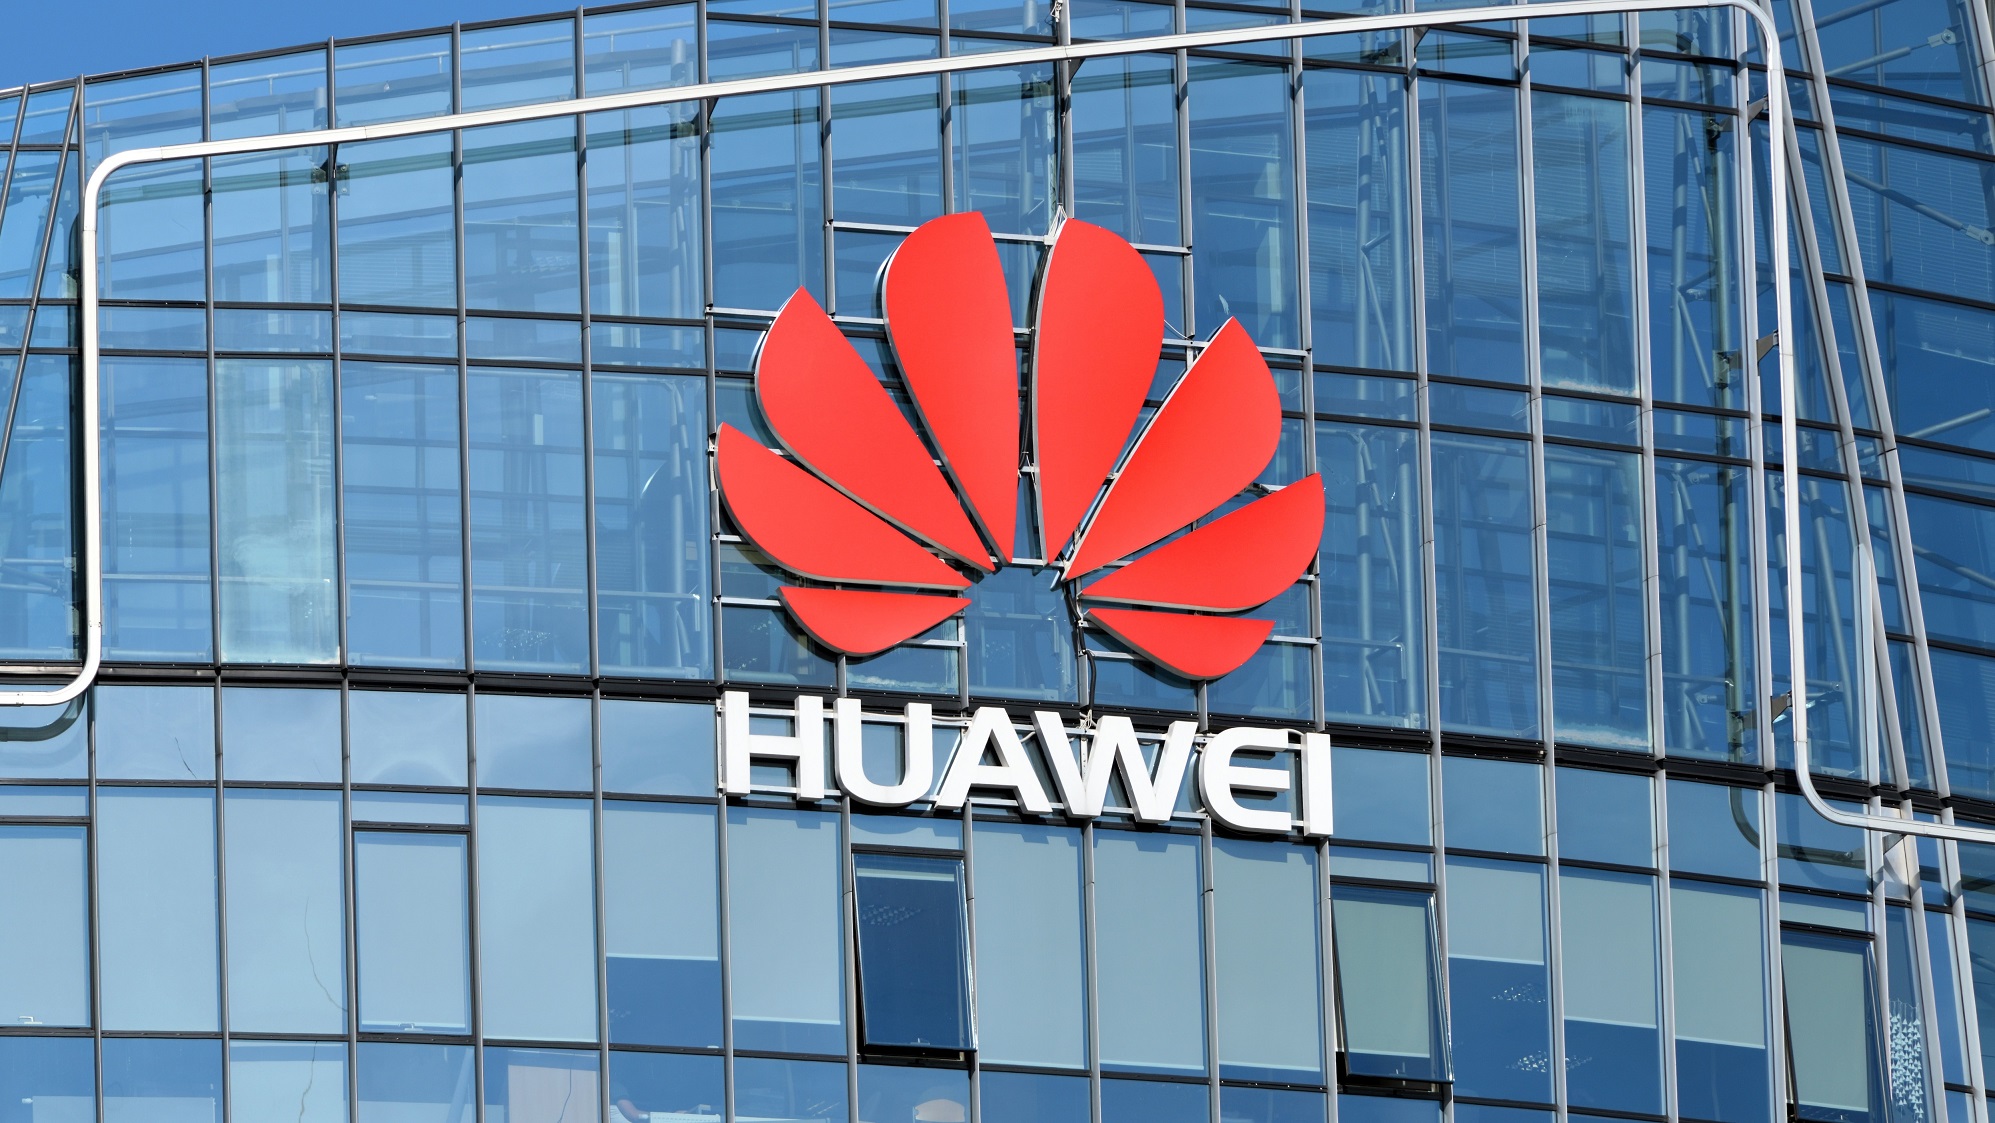 Un acte impressionnant de fausse déclaration : la déclaration officielle de Huawei en réponse à l'accusation de Bloomberg d'implication dans une cyberattaque en Australie